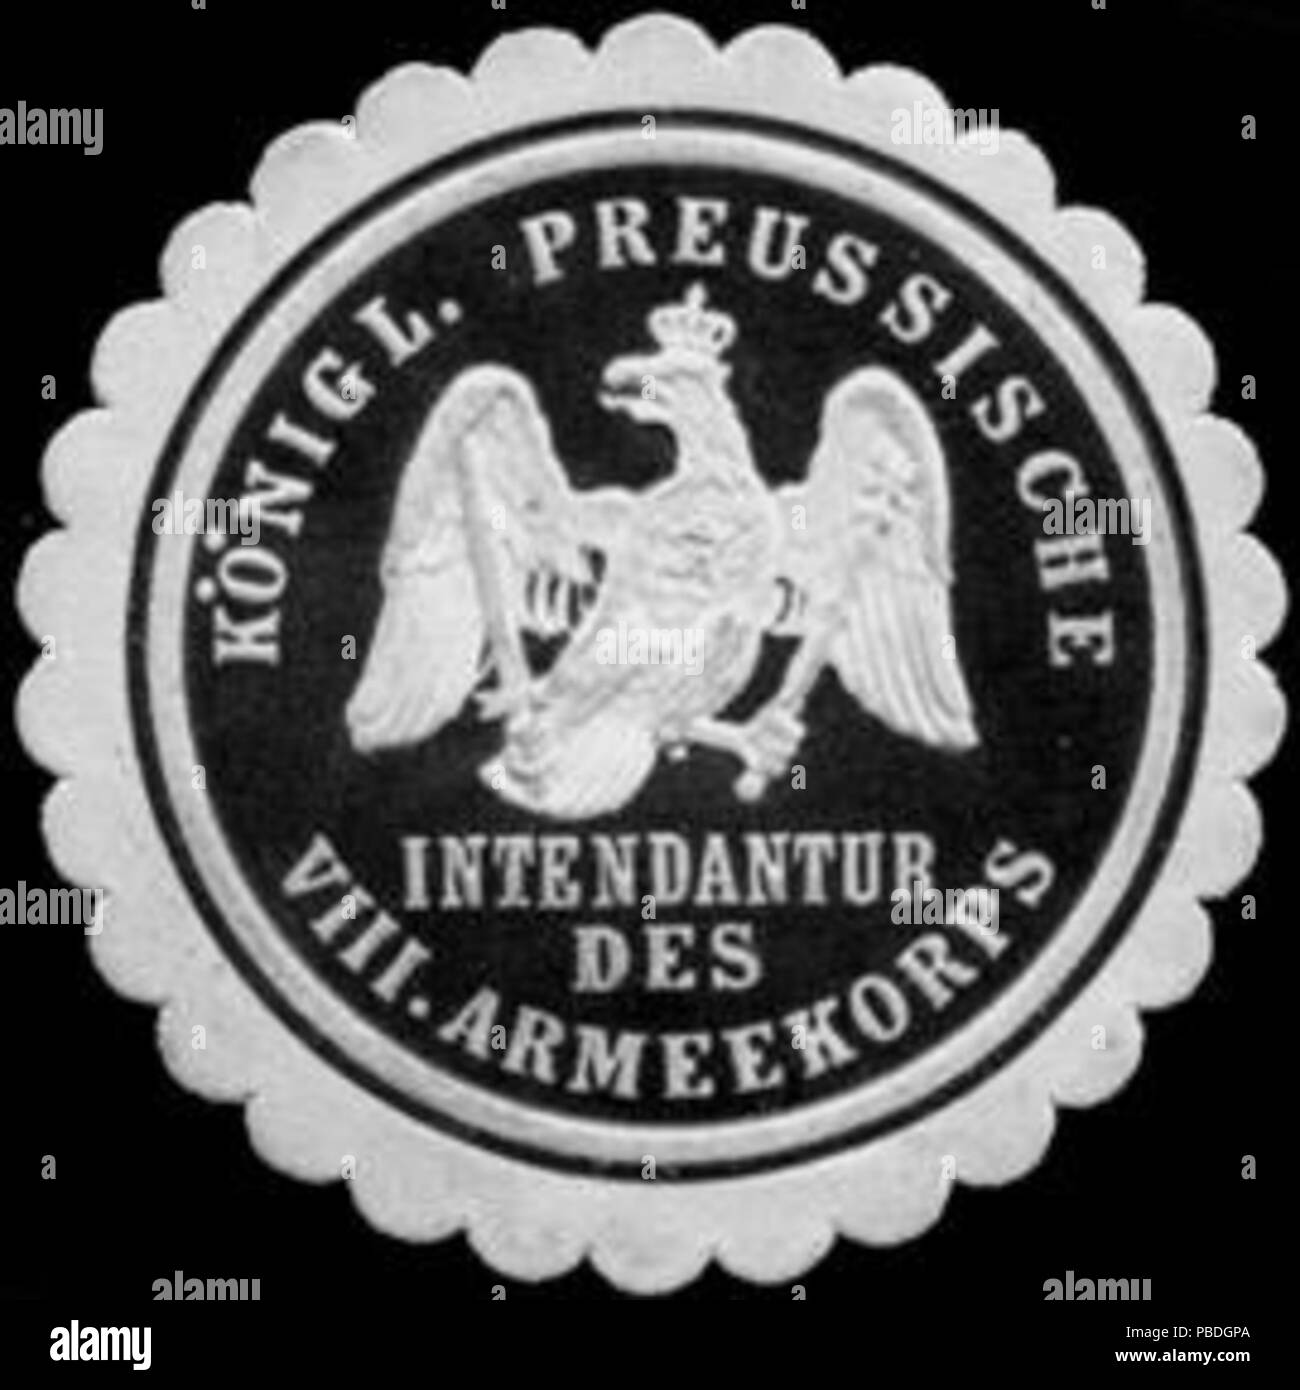 Alte Briefverschlussmarke aus Papier, welche seit ca. 1850 von Behoerden, Anwaelten, Notaren und Firmen zum verschliessen der Post verwendet wurde. 1448 Siegelmarke Königl. Preussische Intendantur des VIII. Armeekorps W0307426 Foto Stock